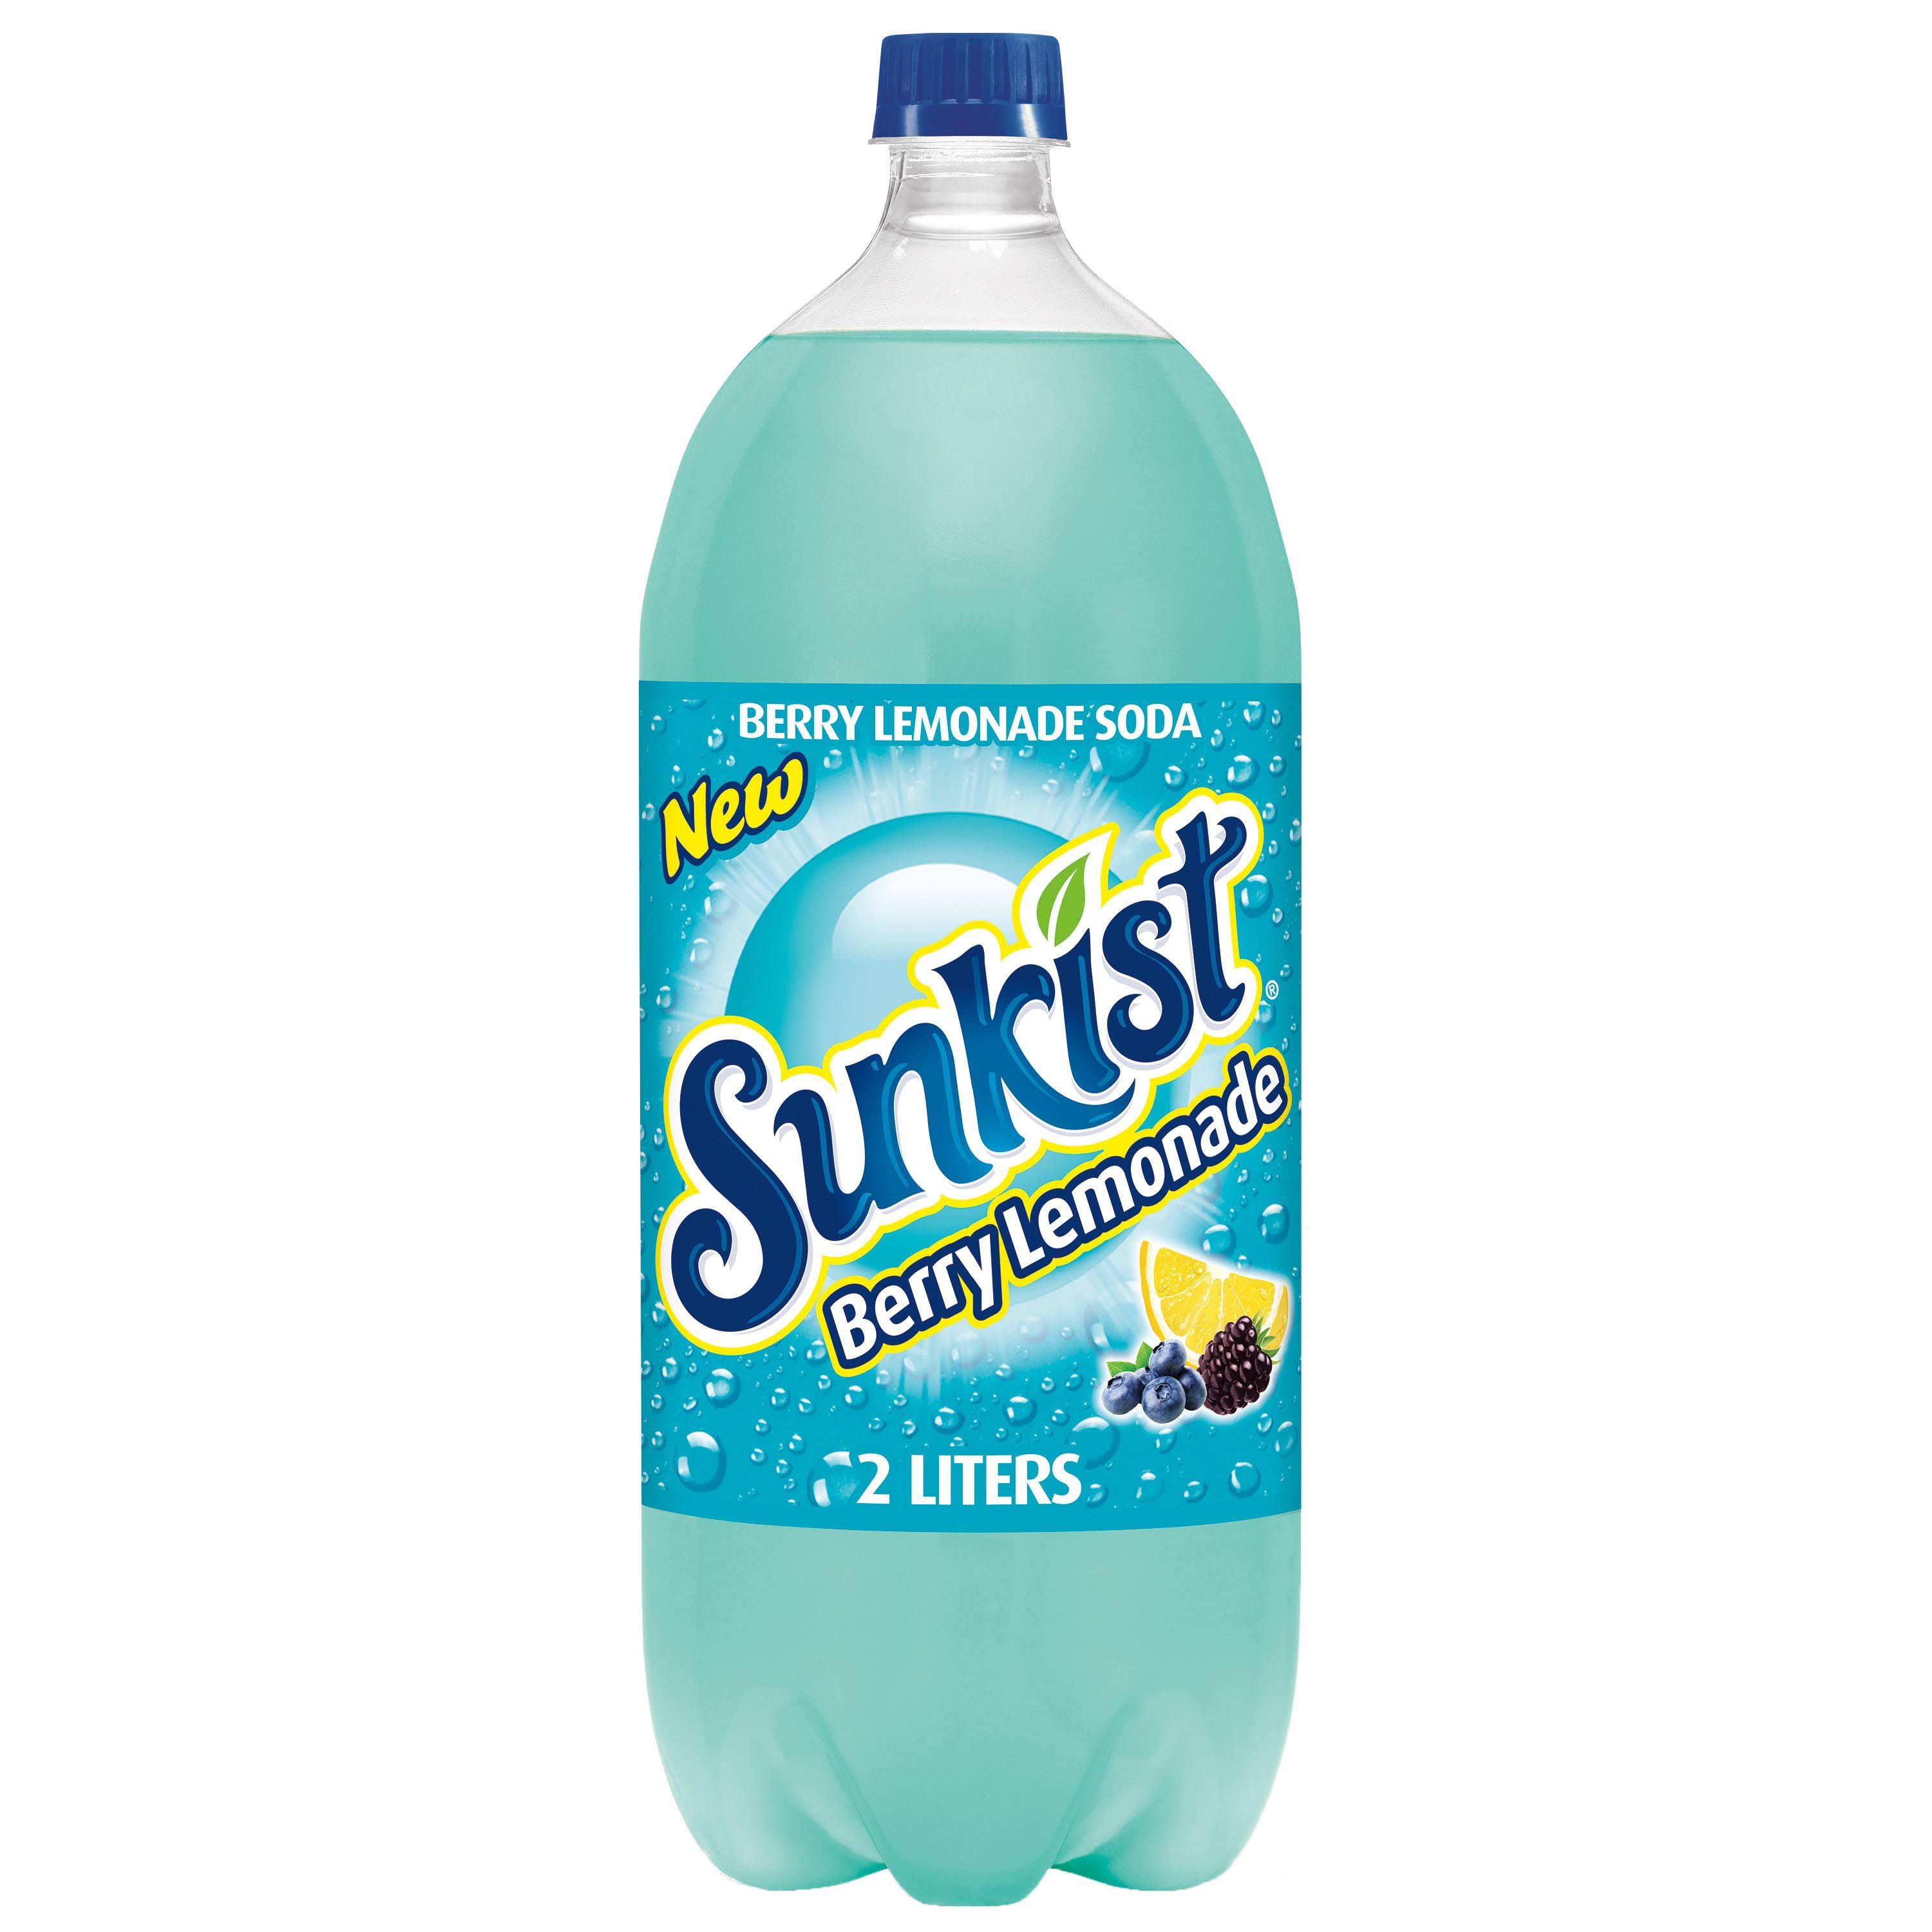 Sunkist Soda, Berry Lemonade - 2 liters (2.1 qt)